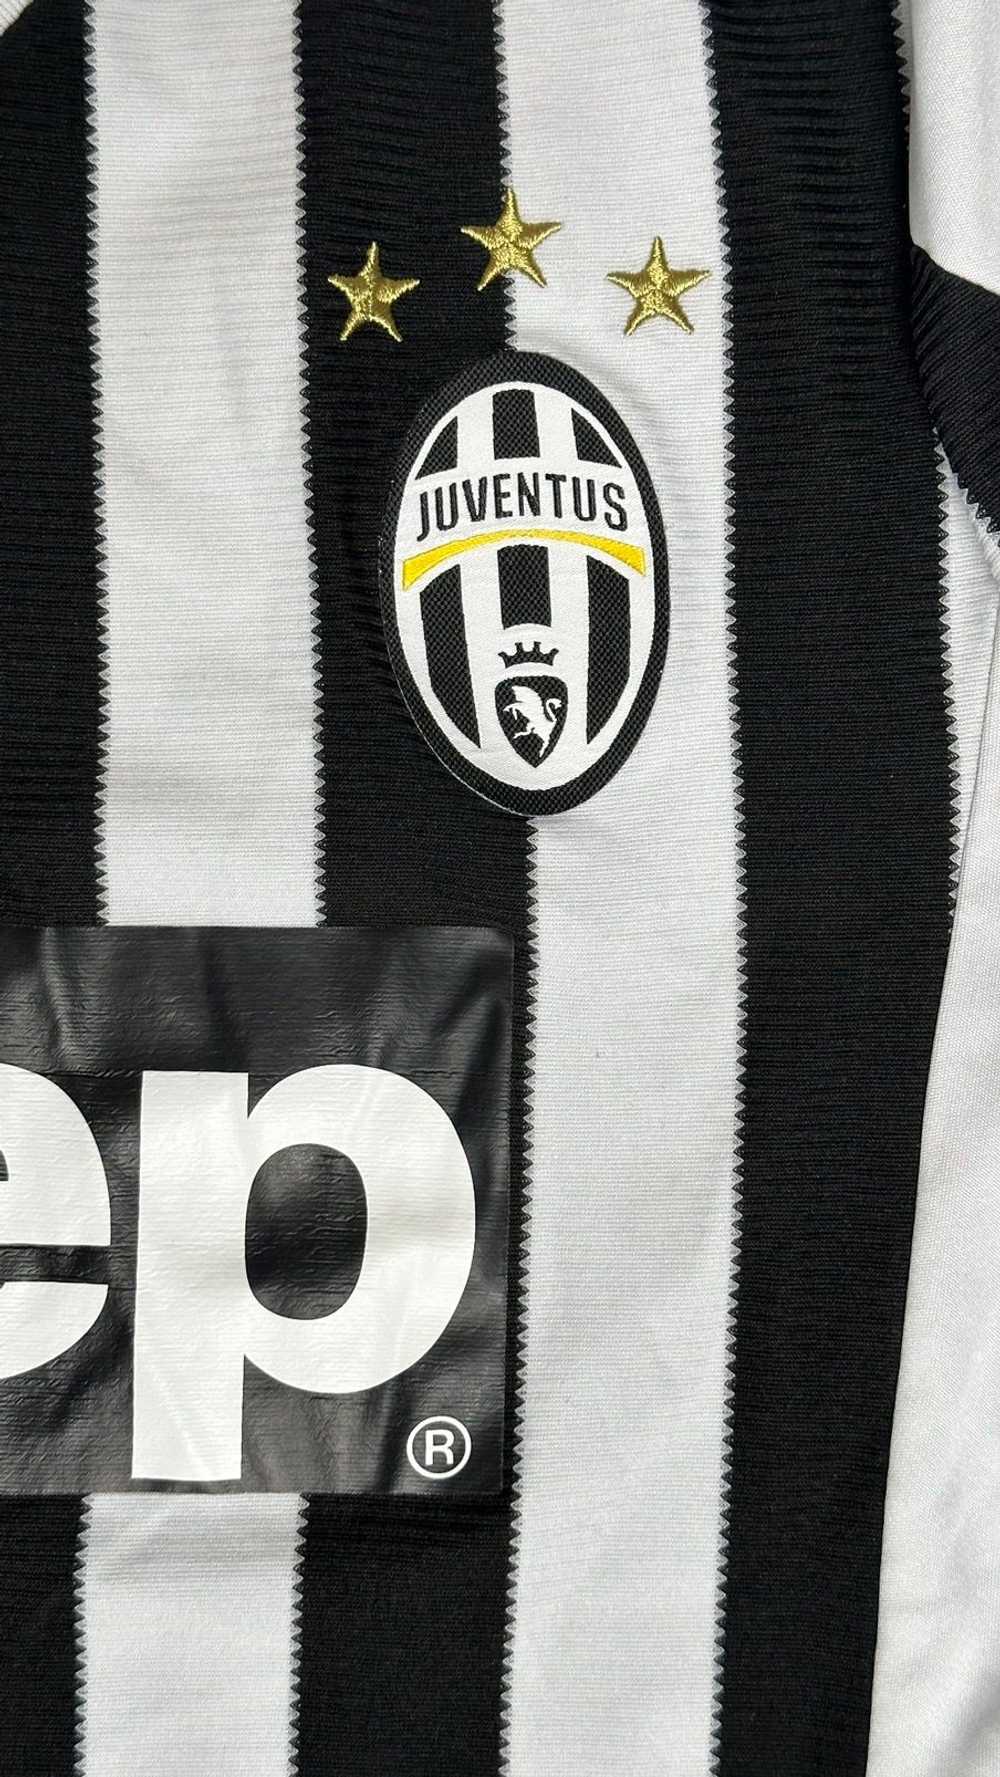 Adidas × Soccer Jersey Juventus 2015 - 2016 Home … - image 6